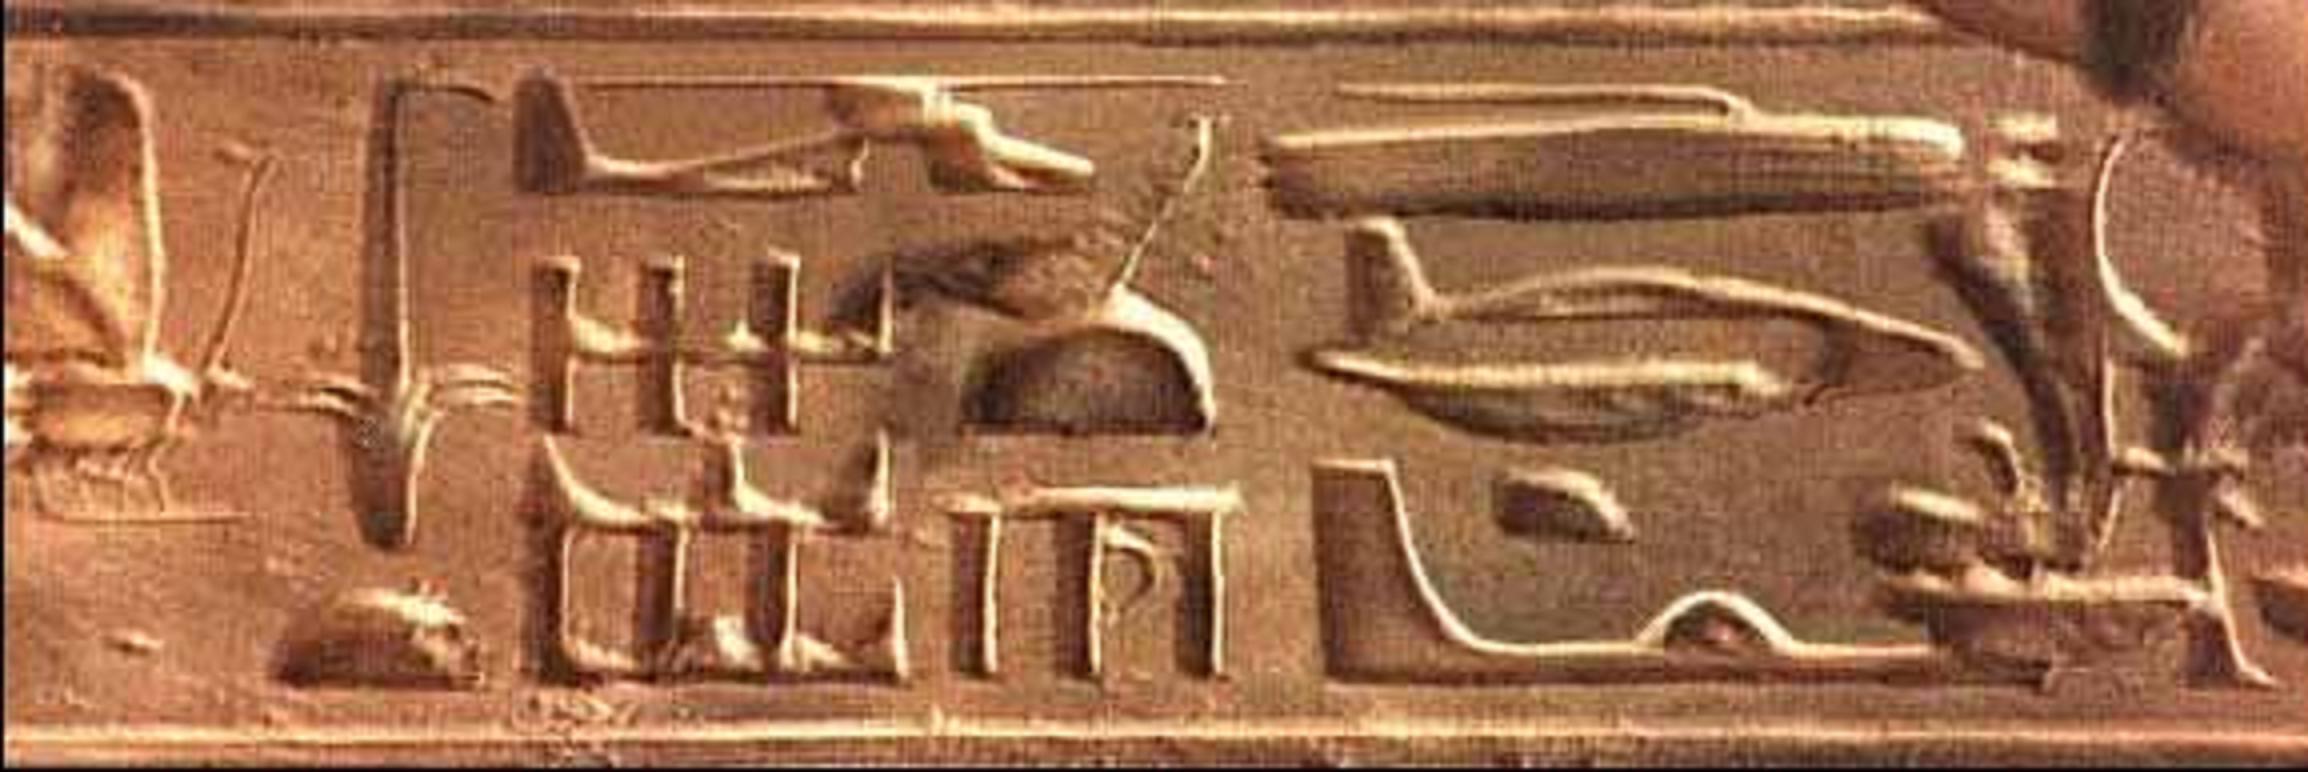 Абидосские иероглифы — иероглифы, обнаруженные в храме Осириса древнего египетского города Абидос и принимаемые за вертолёт, подводную лодку, дирижабль и планёр